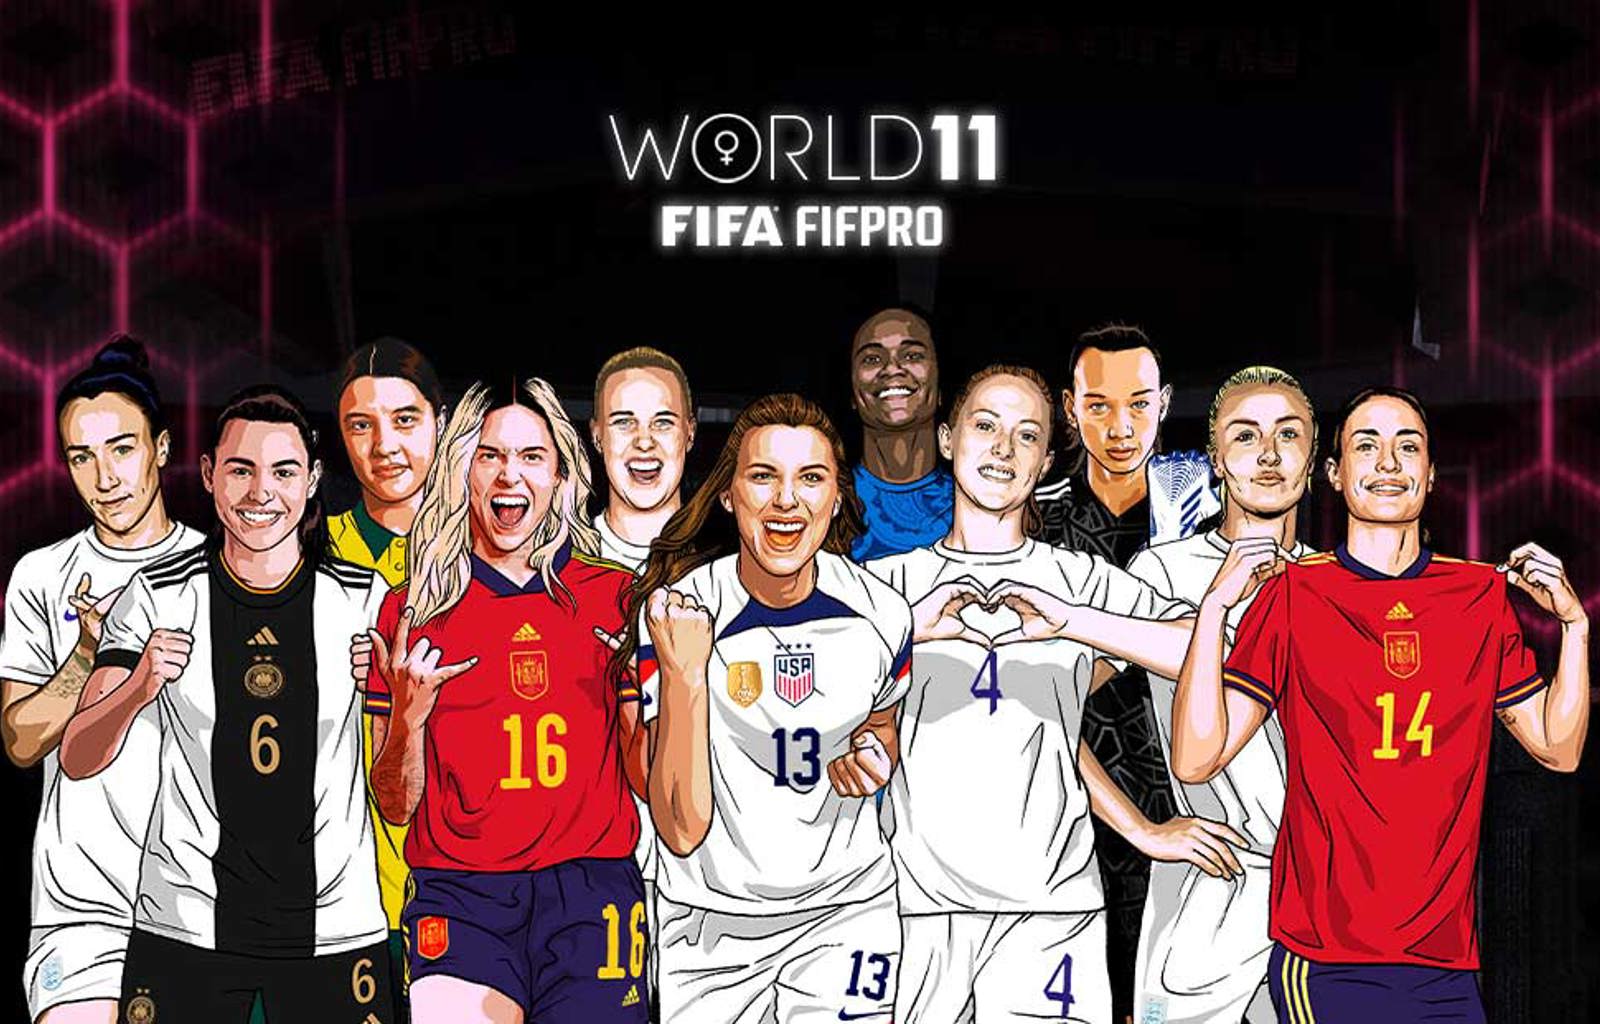 FIFA FIFPRO Women's W11